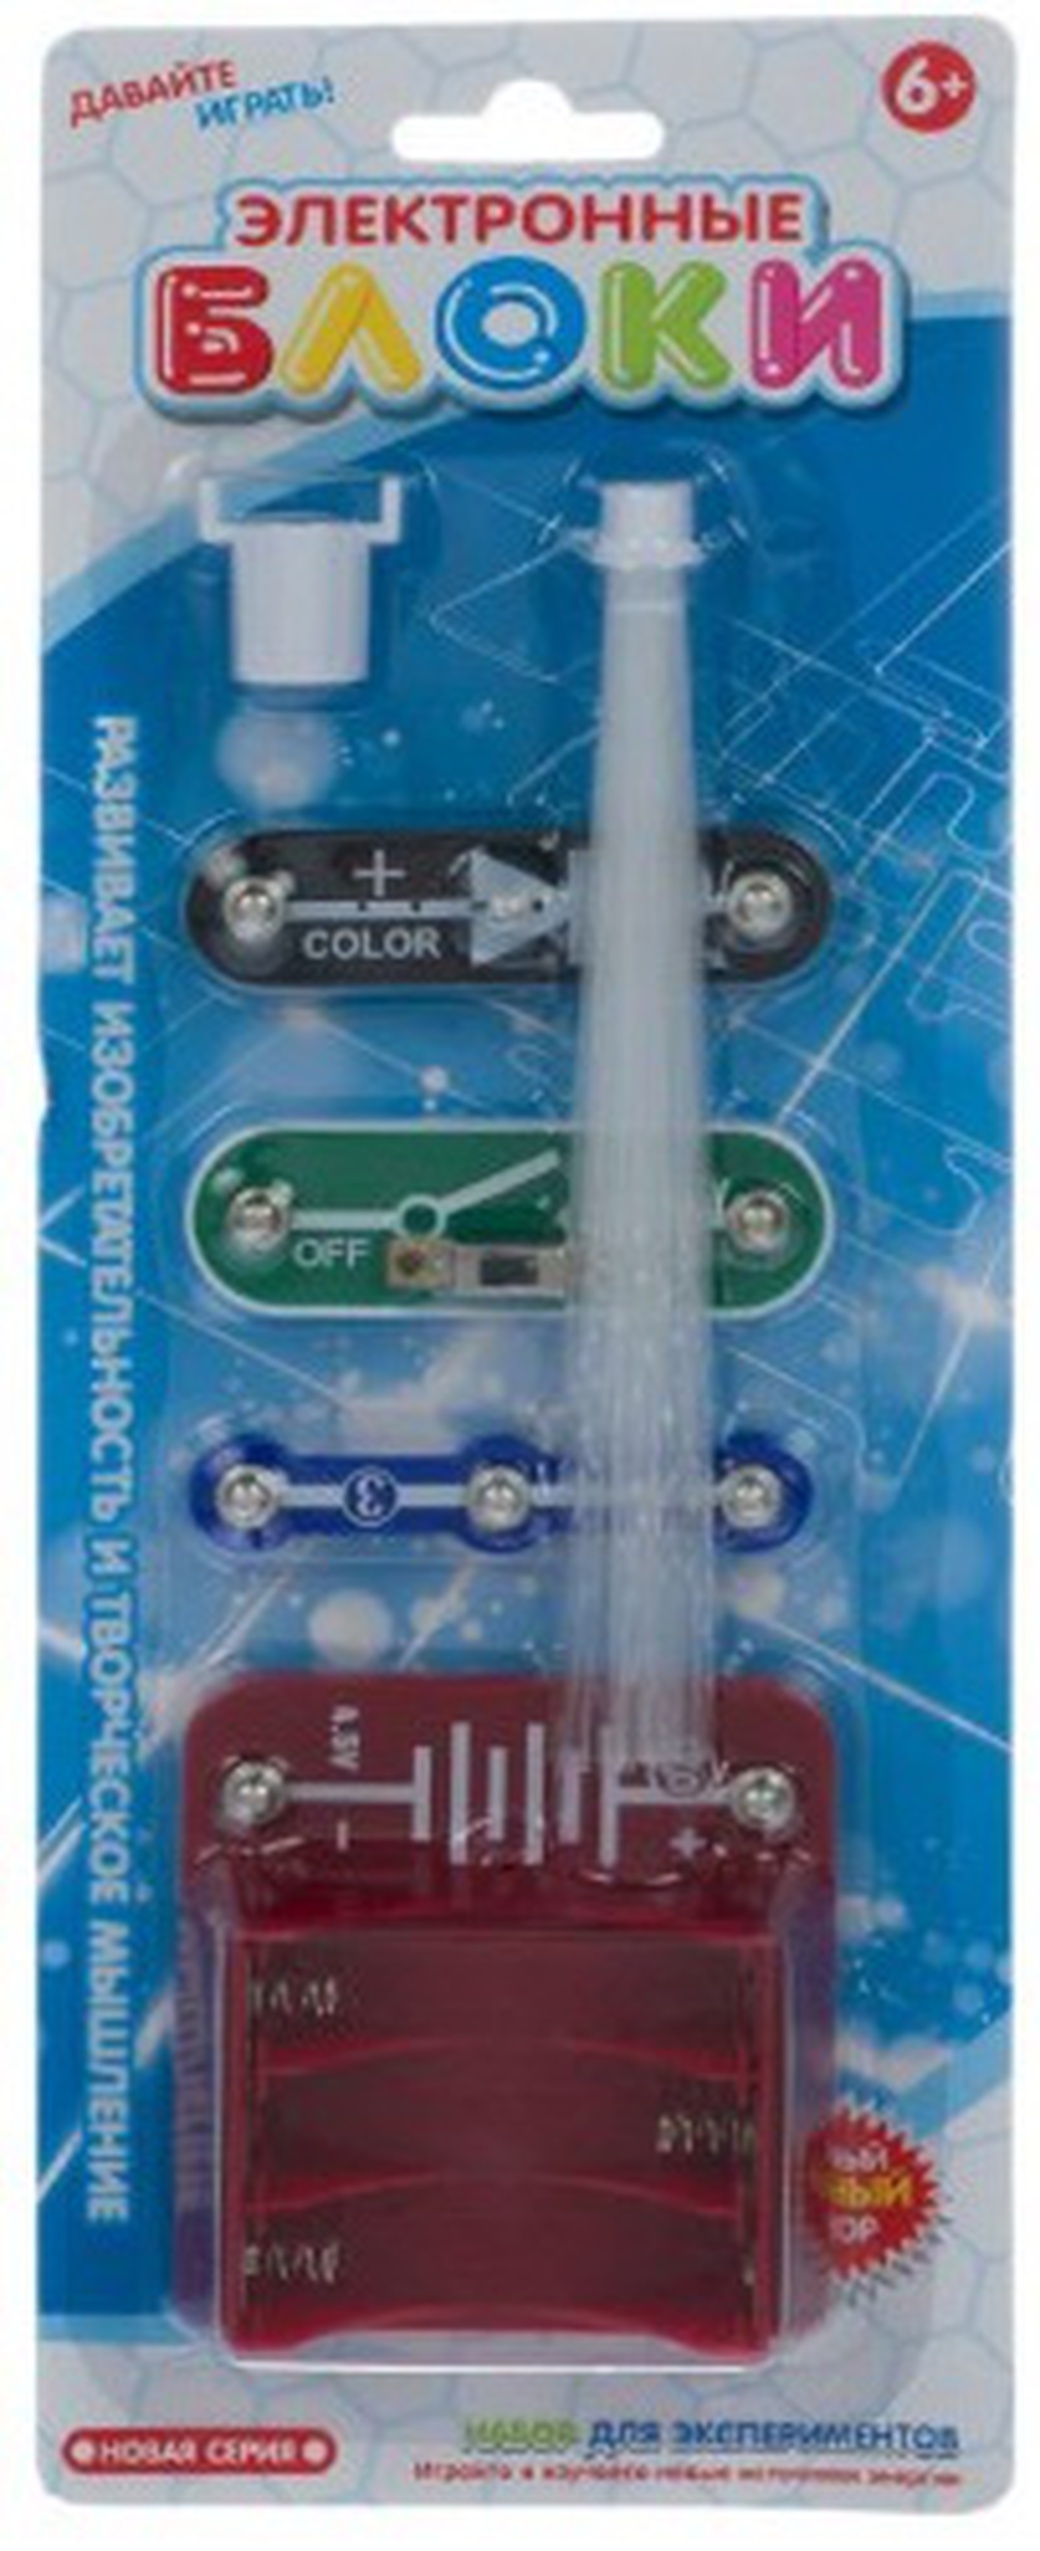 Детская игрушка в наборе: оптоволоконная лампа. Электронный конструктор (YJ188180001: Union Vision) фото